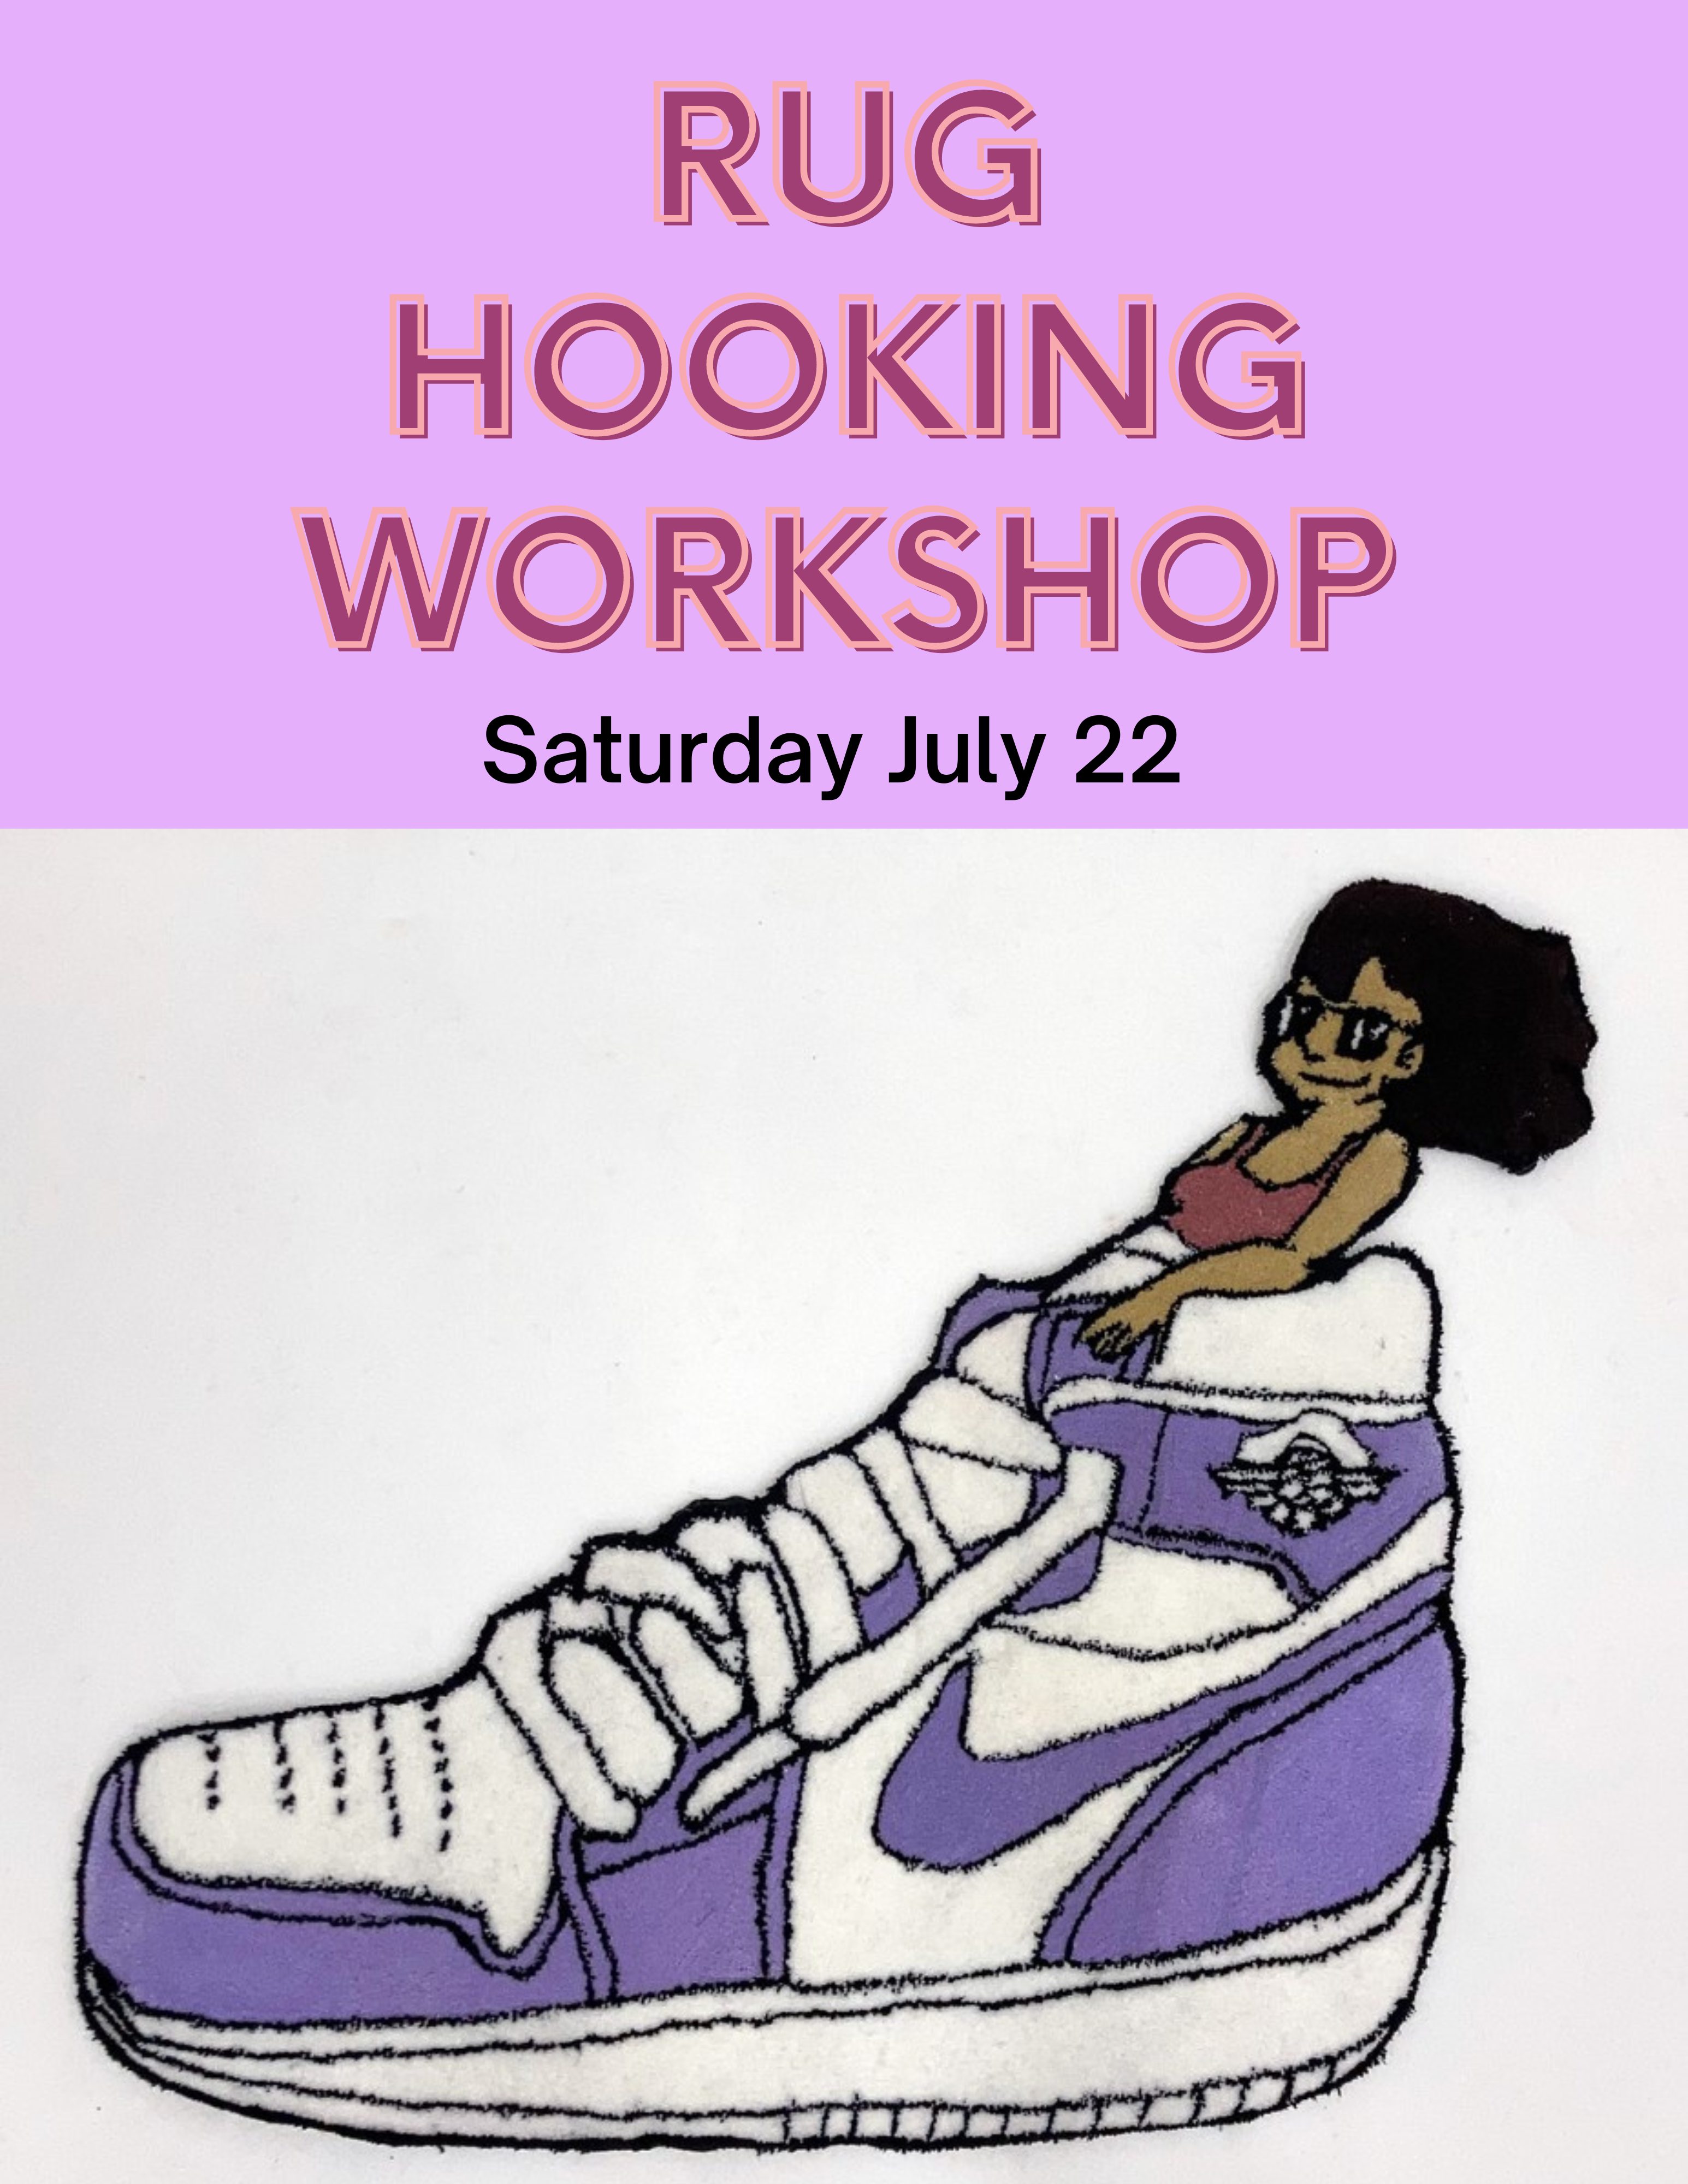 Rug Hooking Workshop Saturday July 22 Woman in hightop purple sneaker 